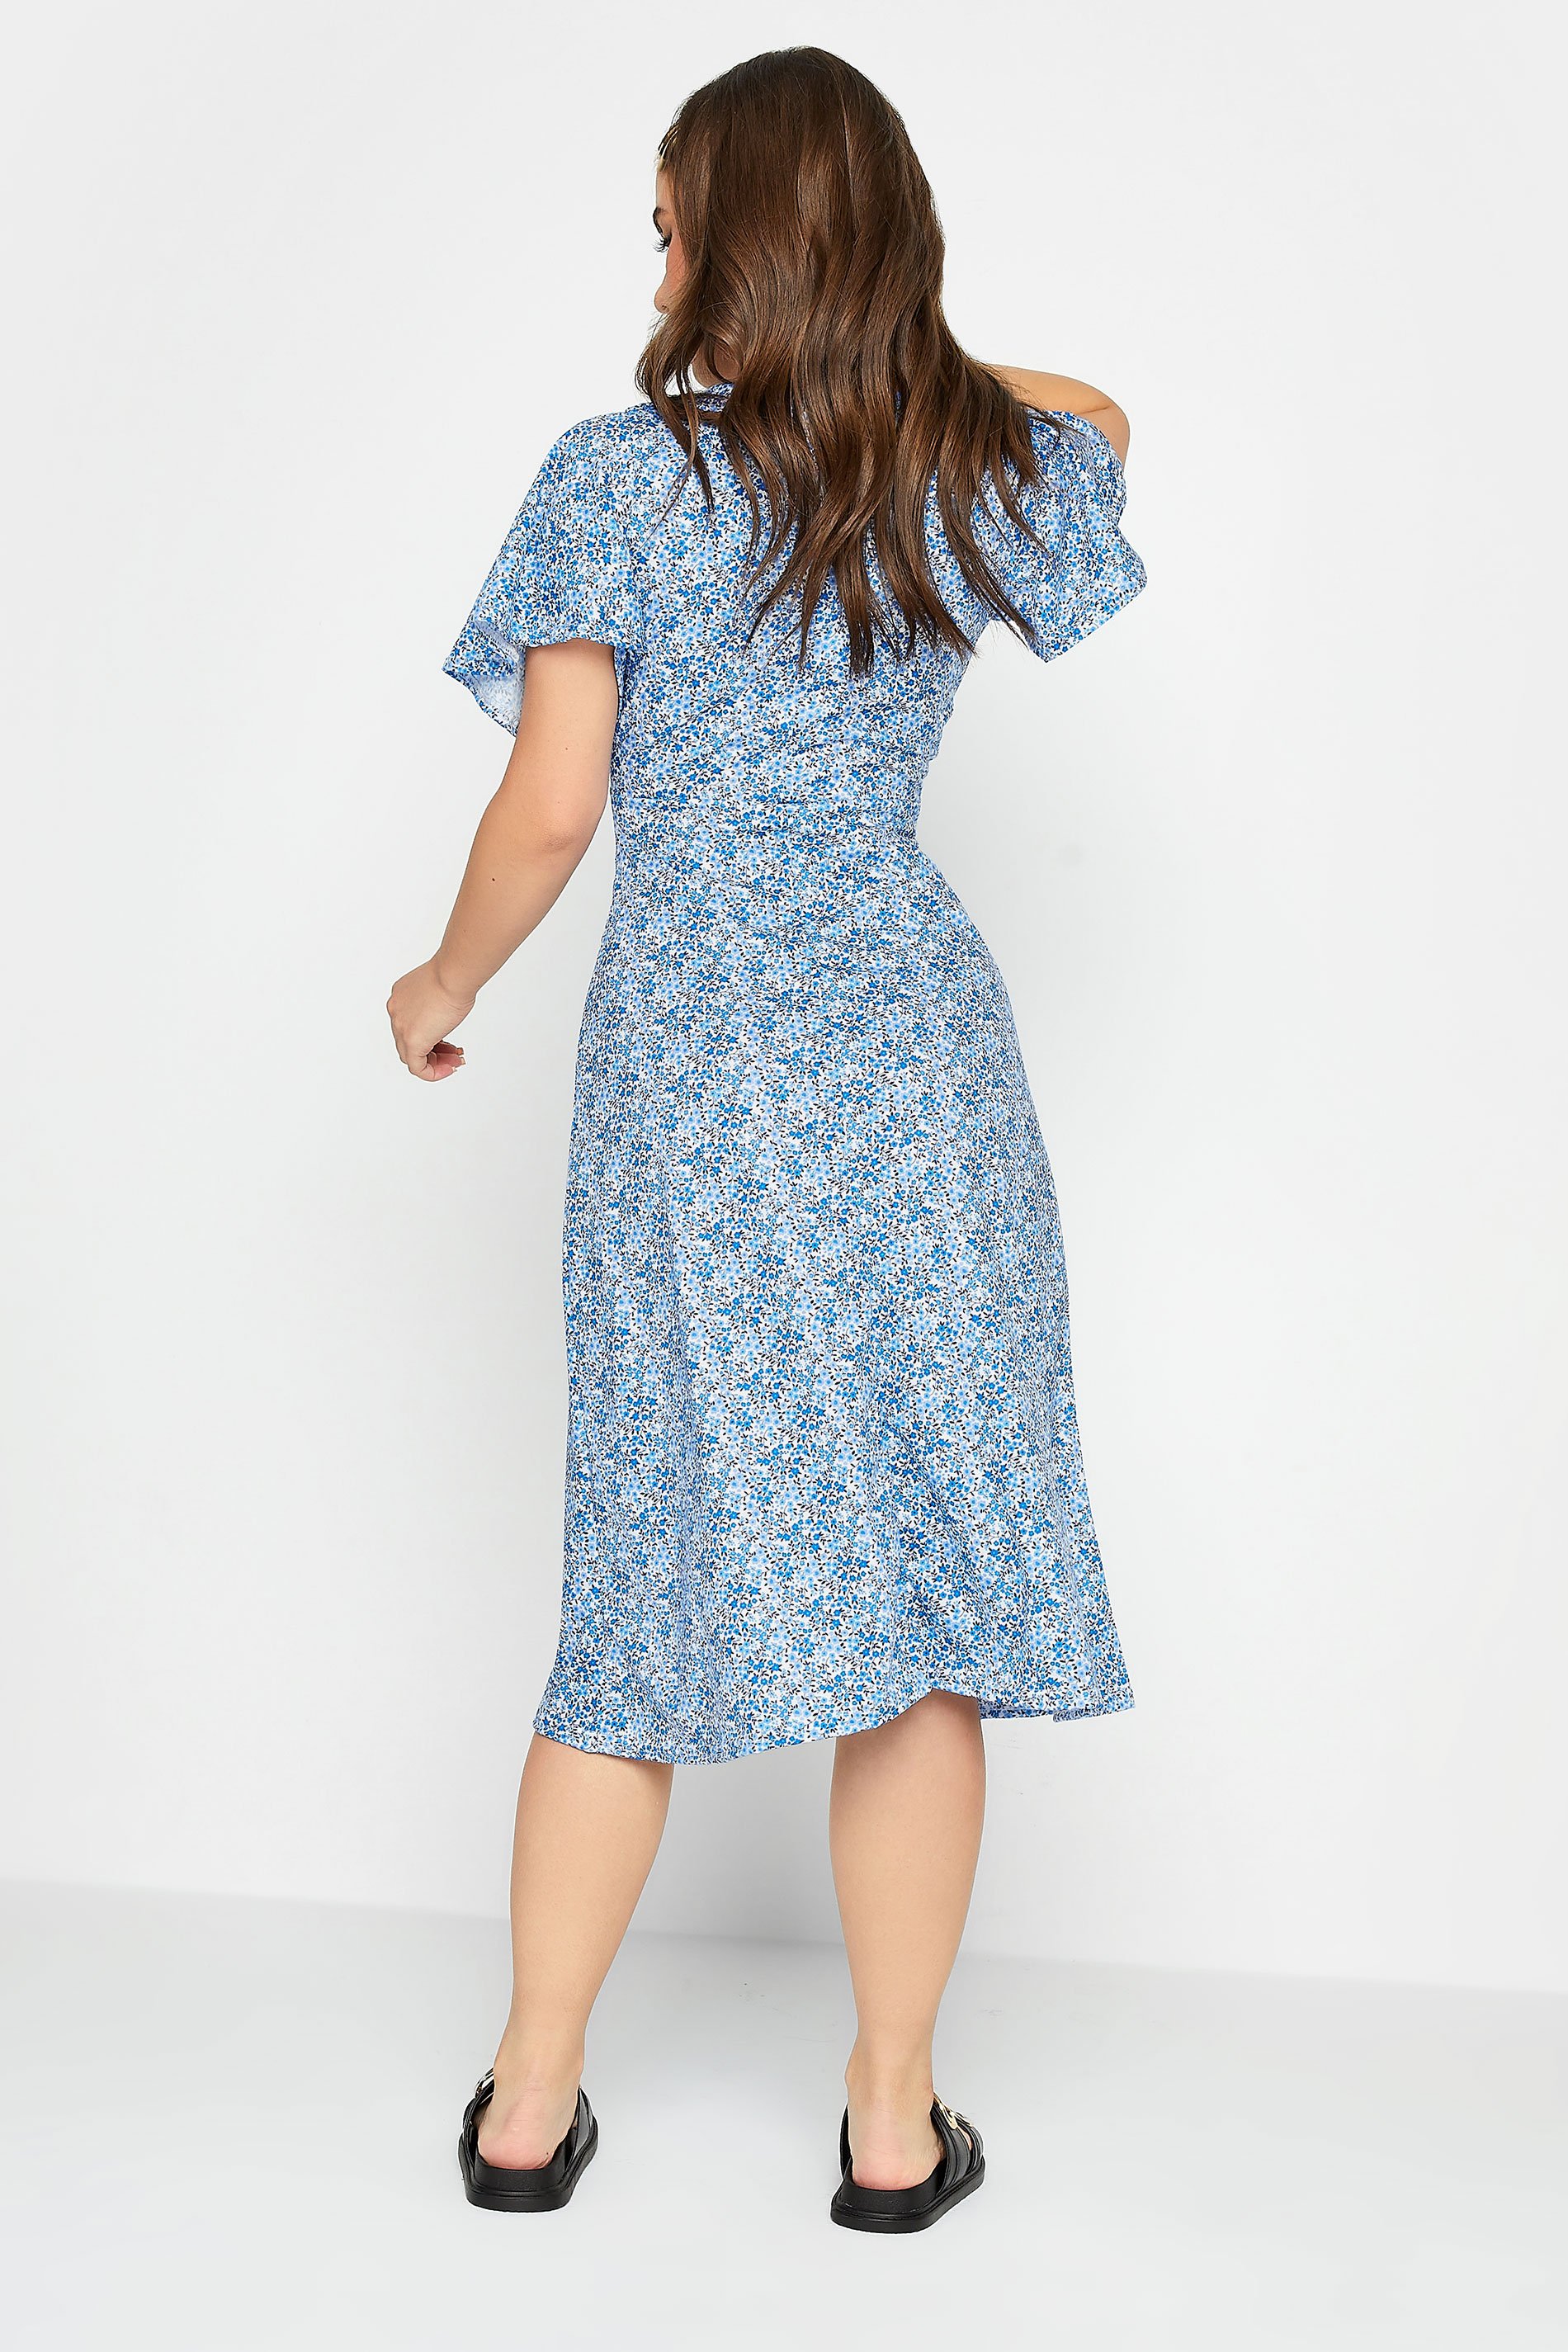 PixieGirl Petite Womens Light Blue Ditsy Floral Print Midi Dress | PixieGirl 3